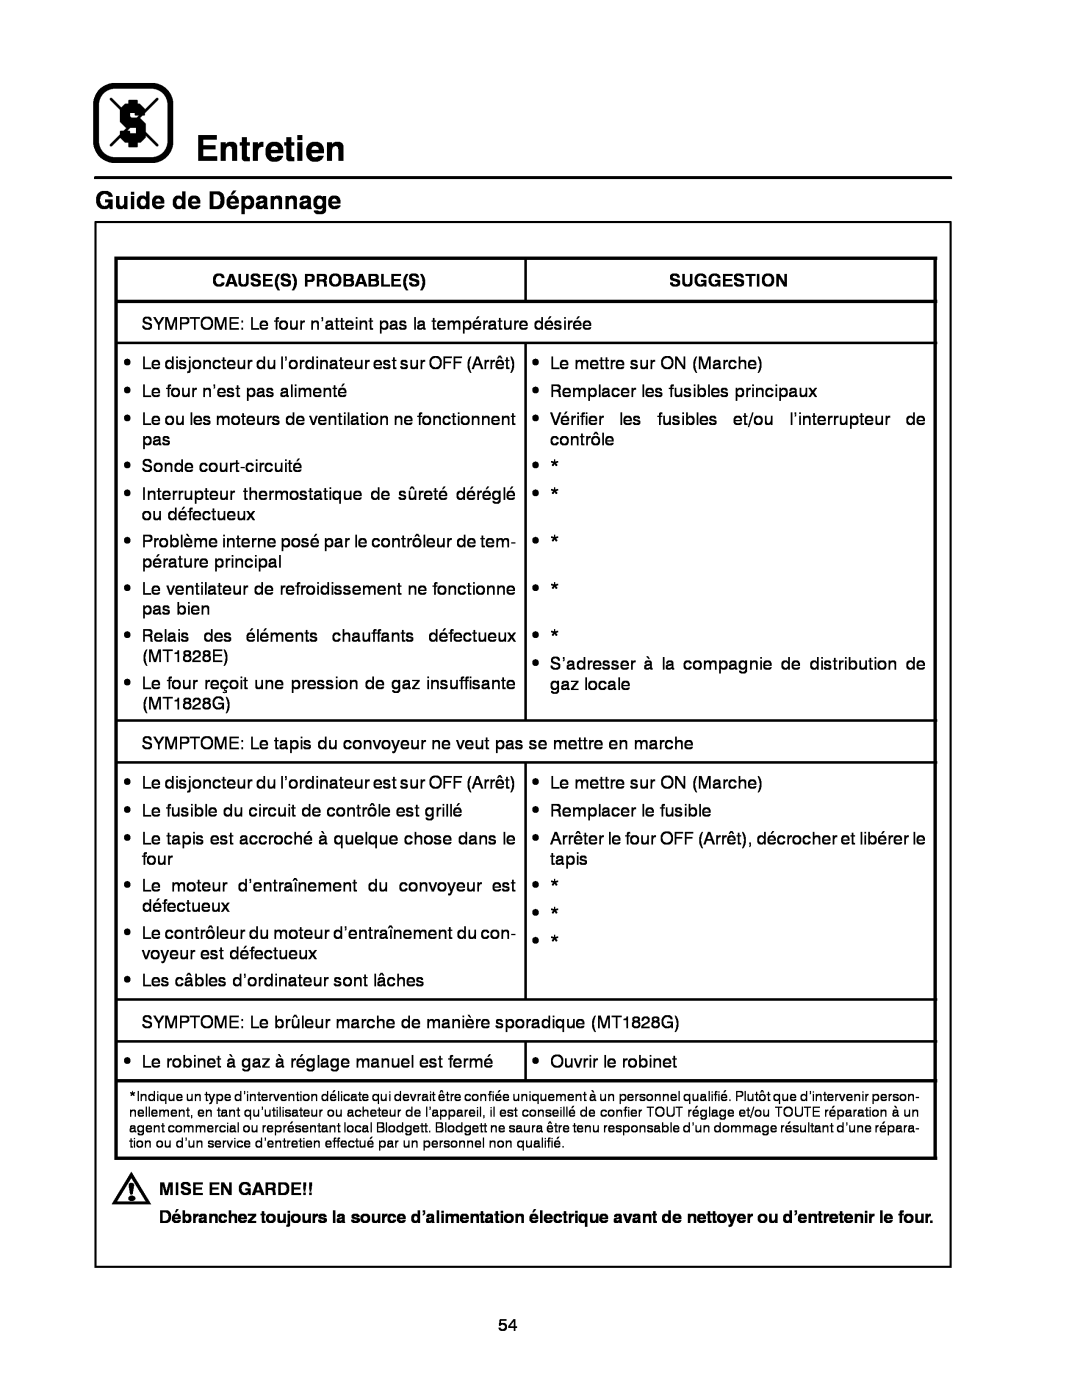 Blodgett MT1828G, MT1828E manual Guide de Dépannage, Entretien 